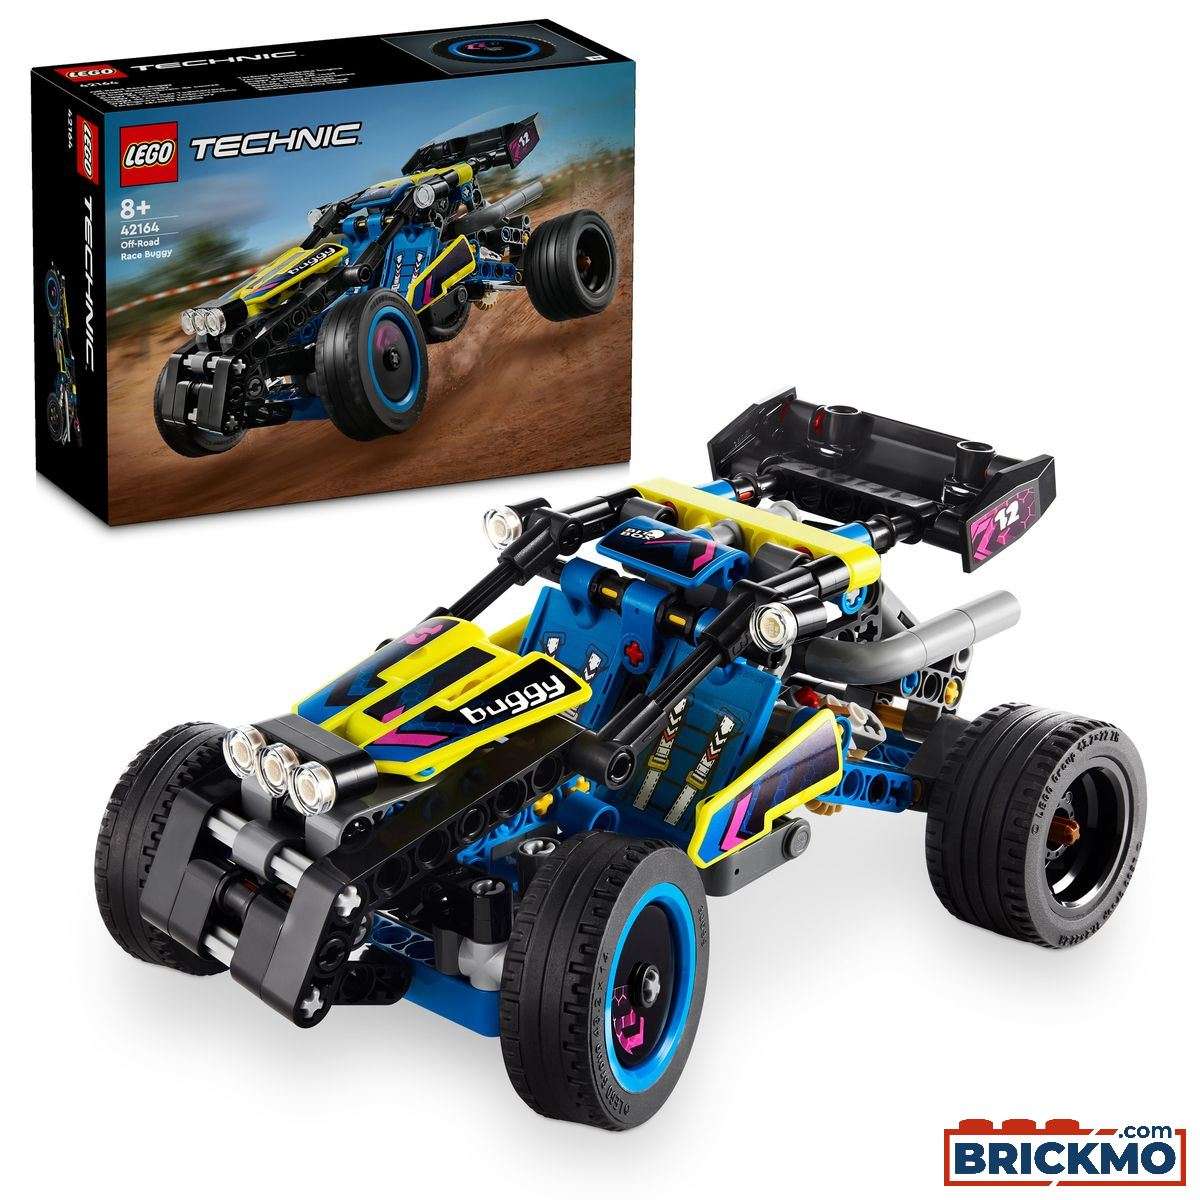 LEGO Technic 42164 Offroad racebuggy 42164